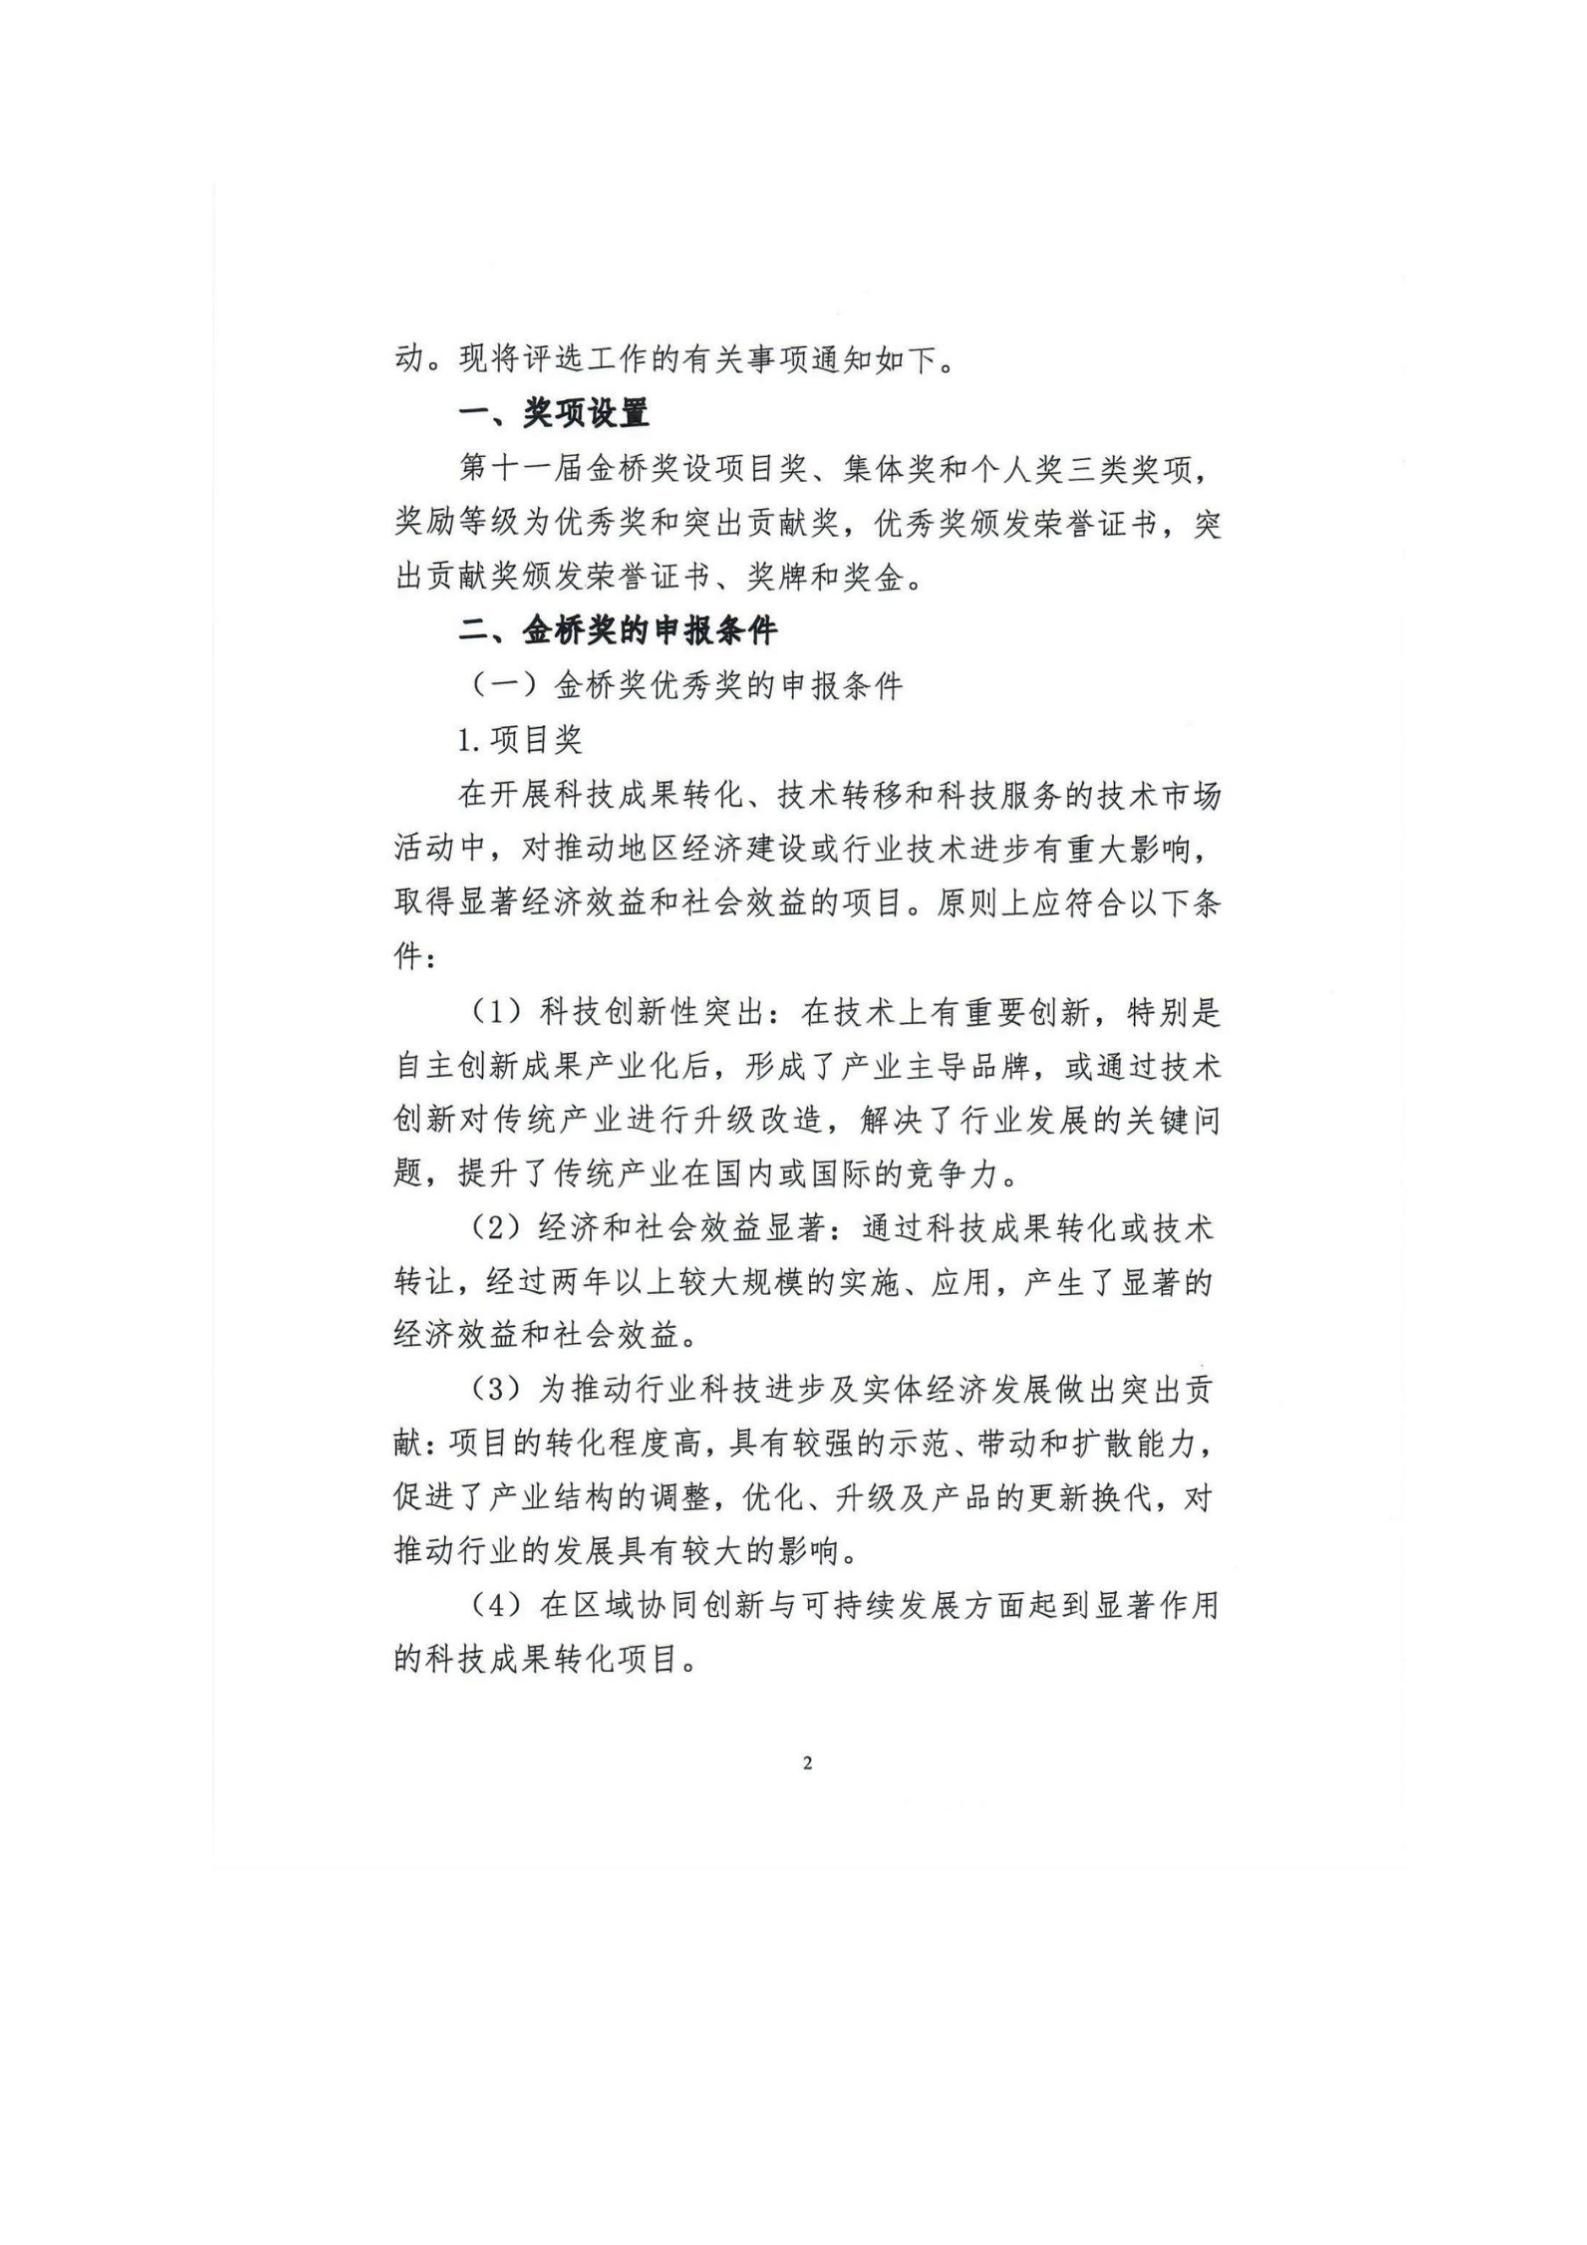 关于组织申报第十一届中国技术市场协会金桥奖表彰奖励的通知_04.jpg